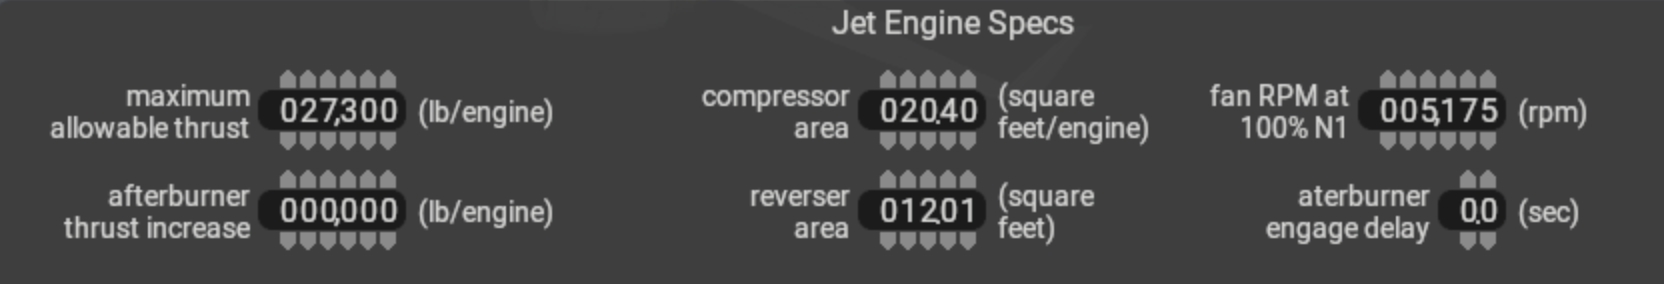 jet engine specs